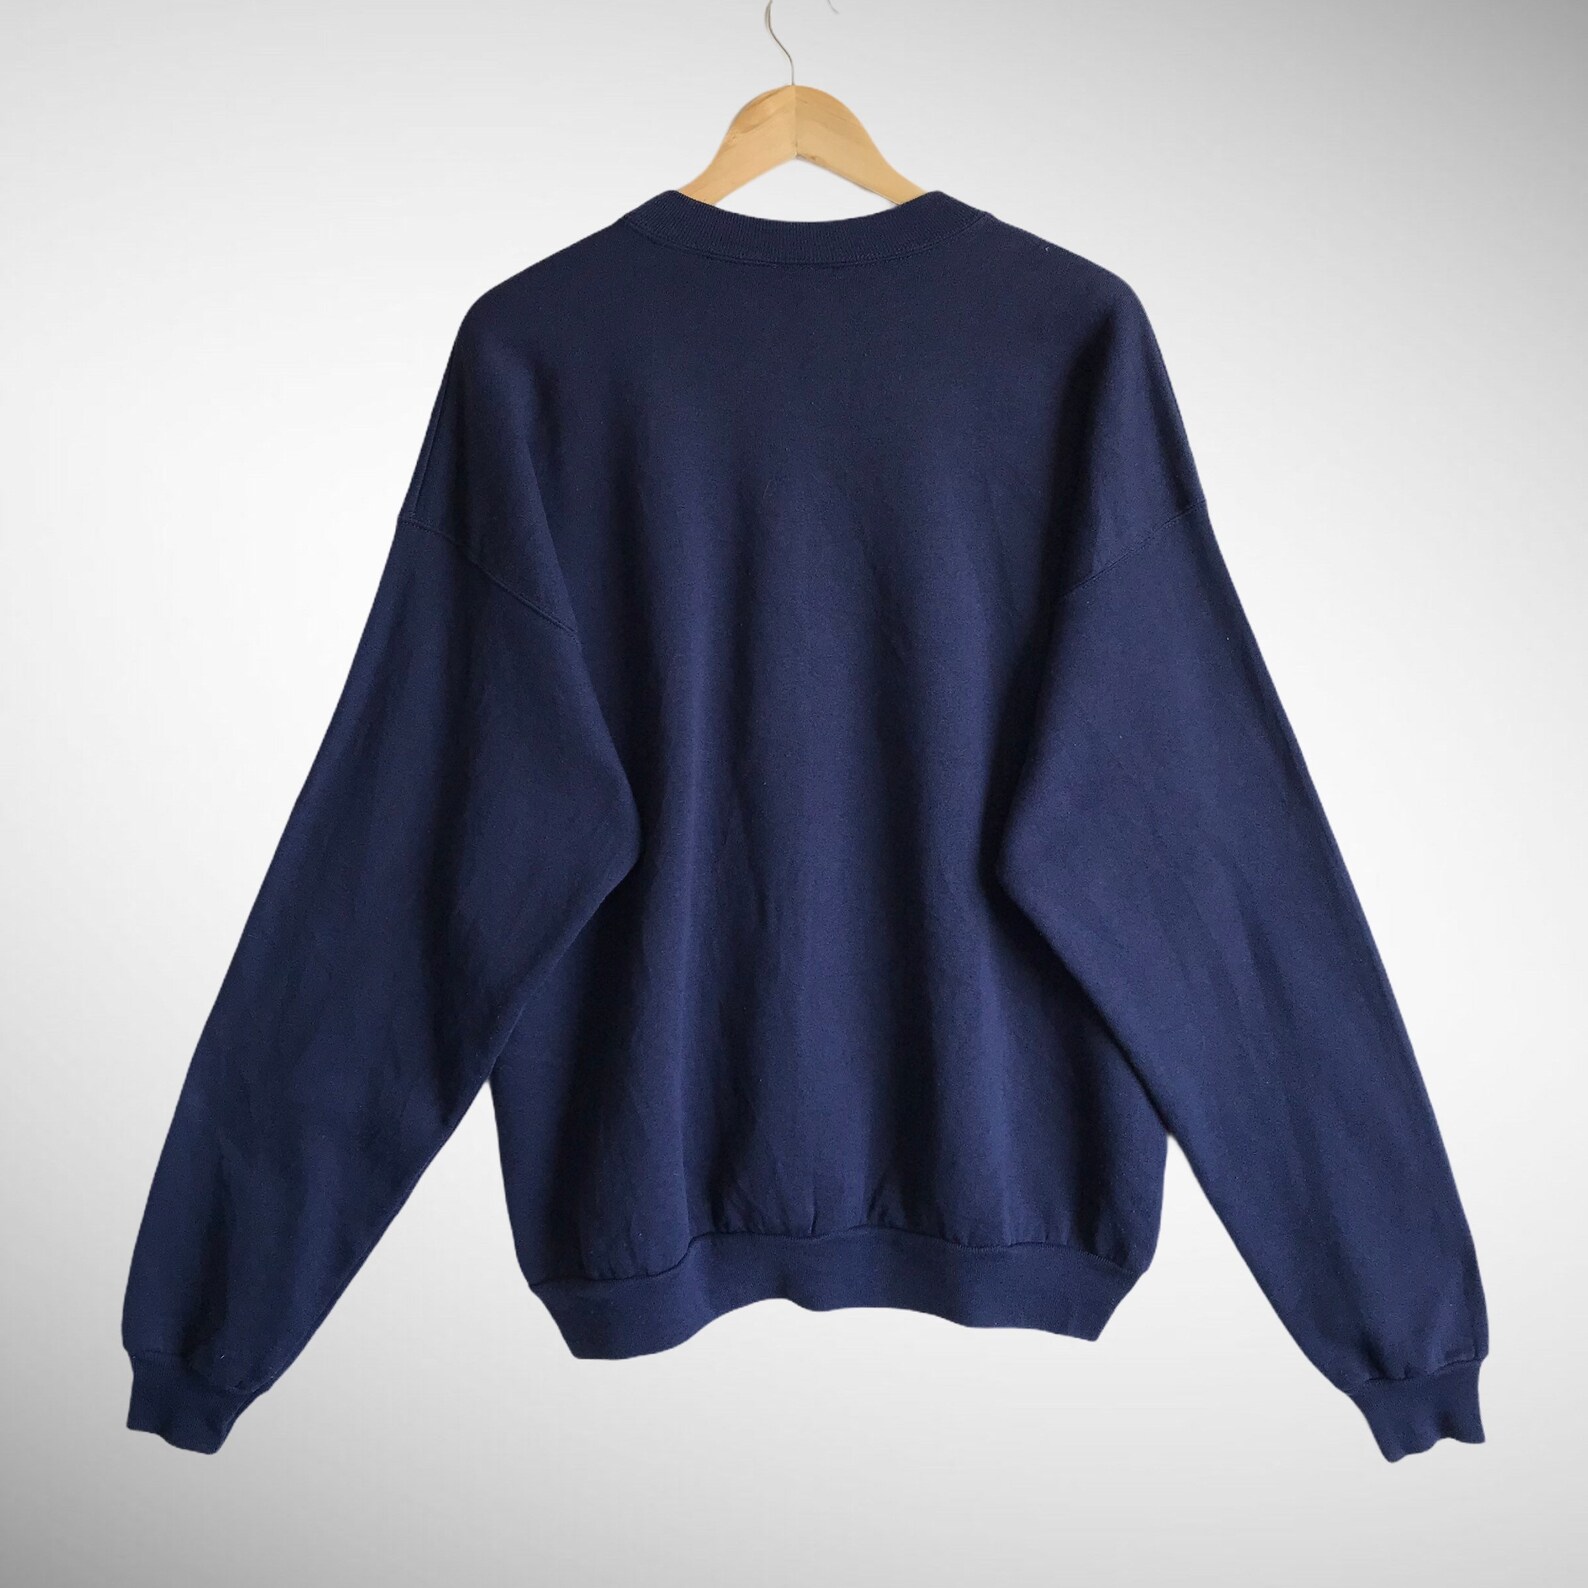 Vintage 90s Sweatshirt Biglogo Pullover Jumper Hanes Navy - Etsy UK